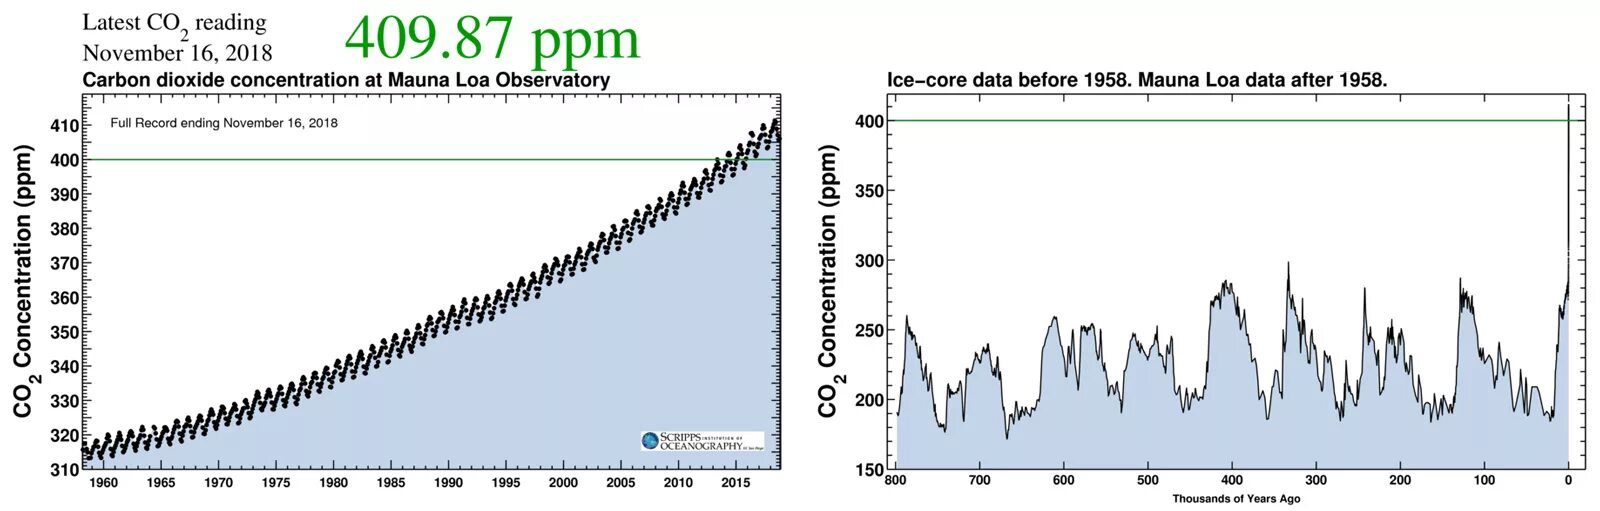 Концентрация со2 в атмосфере динамика. График содержания углекислого газа в атмосфере. Рост концентрации со2 в атмосфере. Рост концентрации углекислого газа в атмосфере.